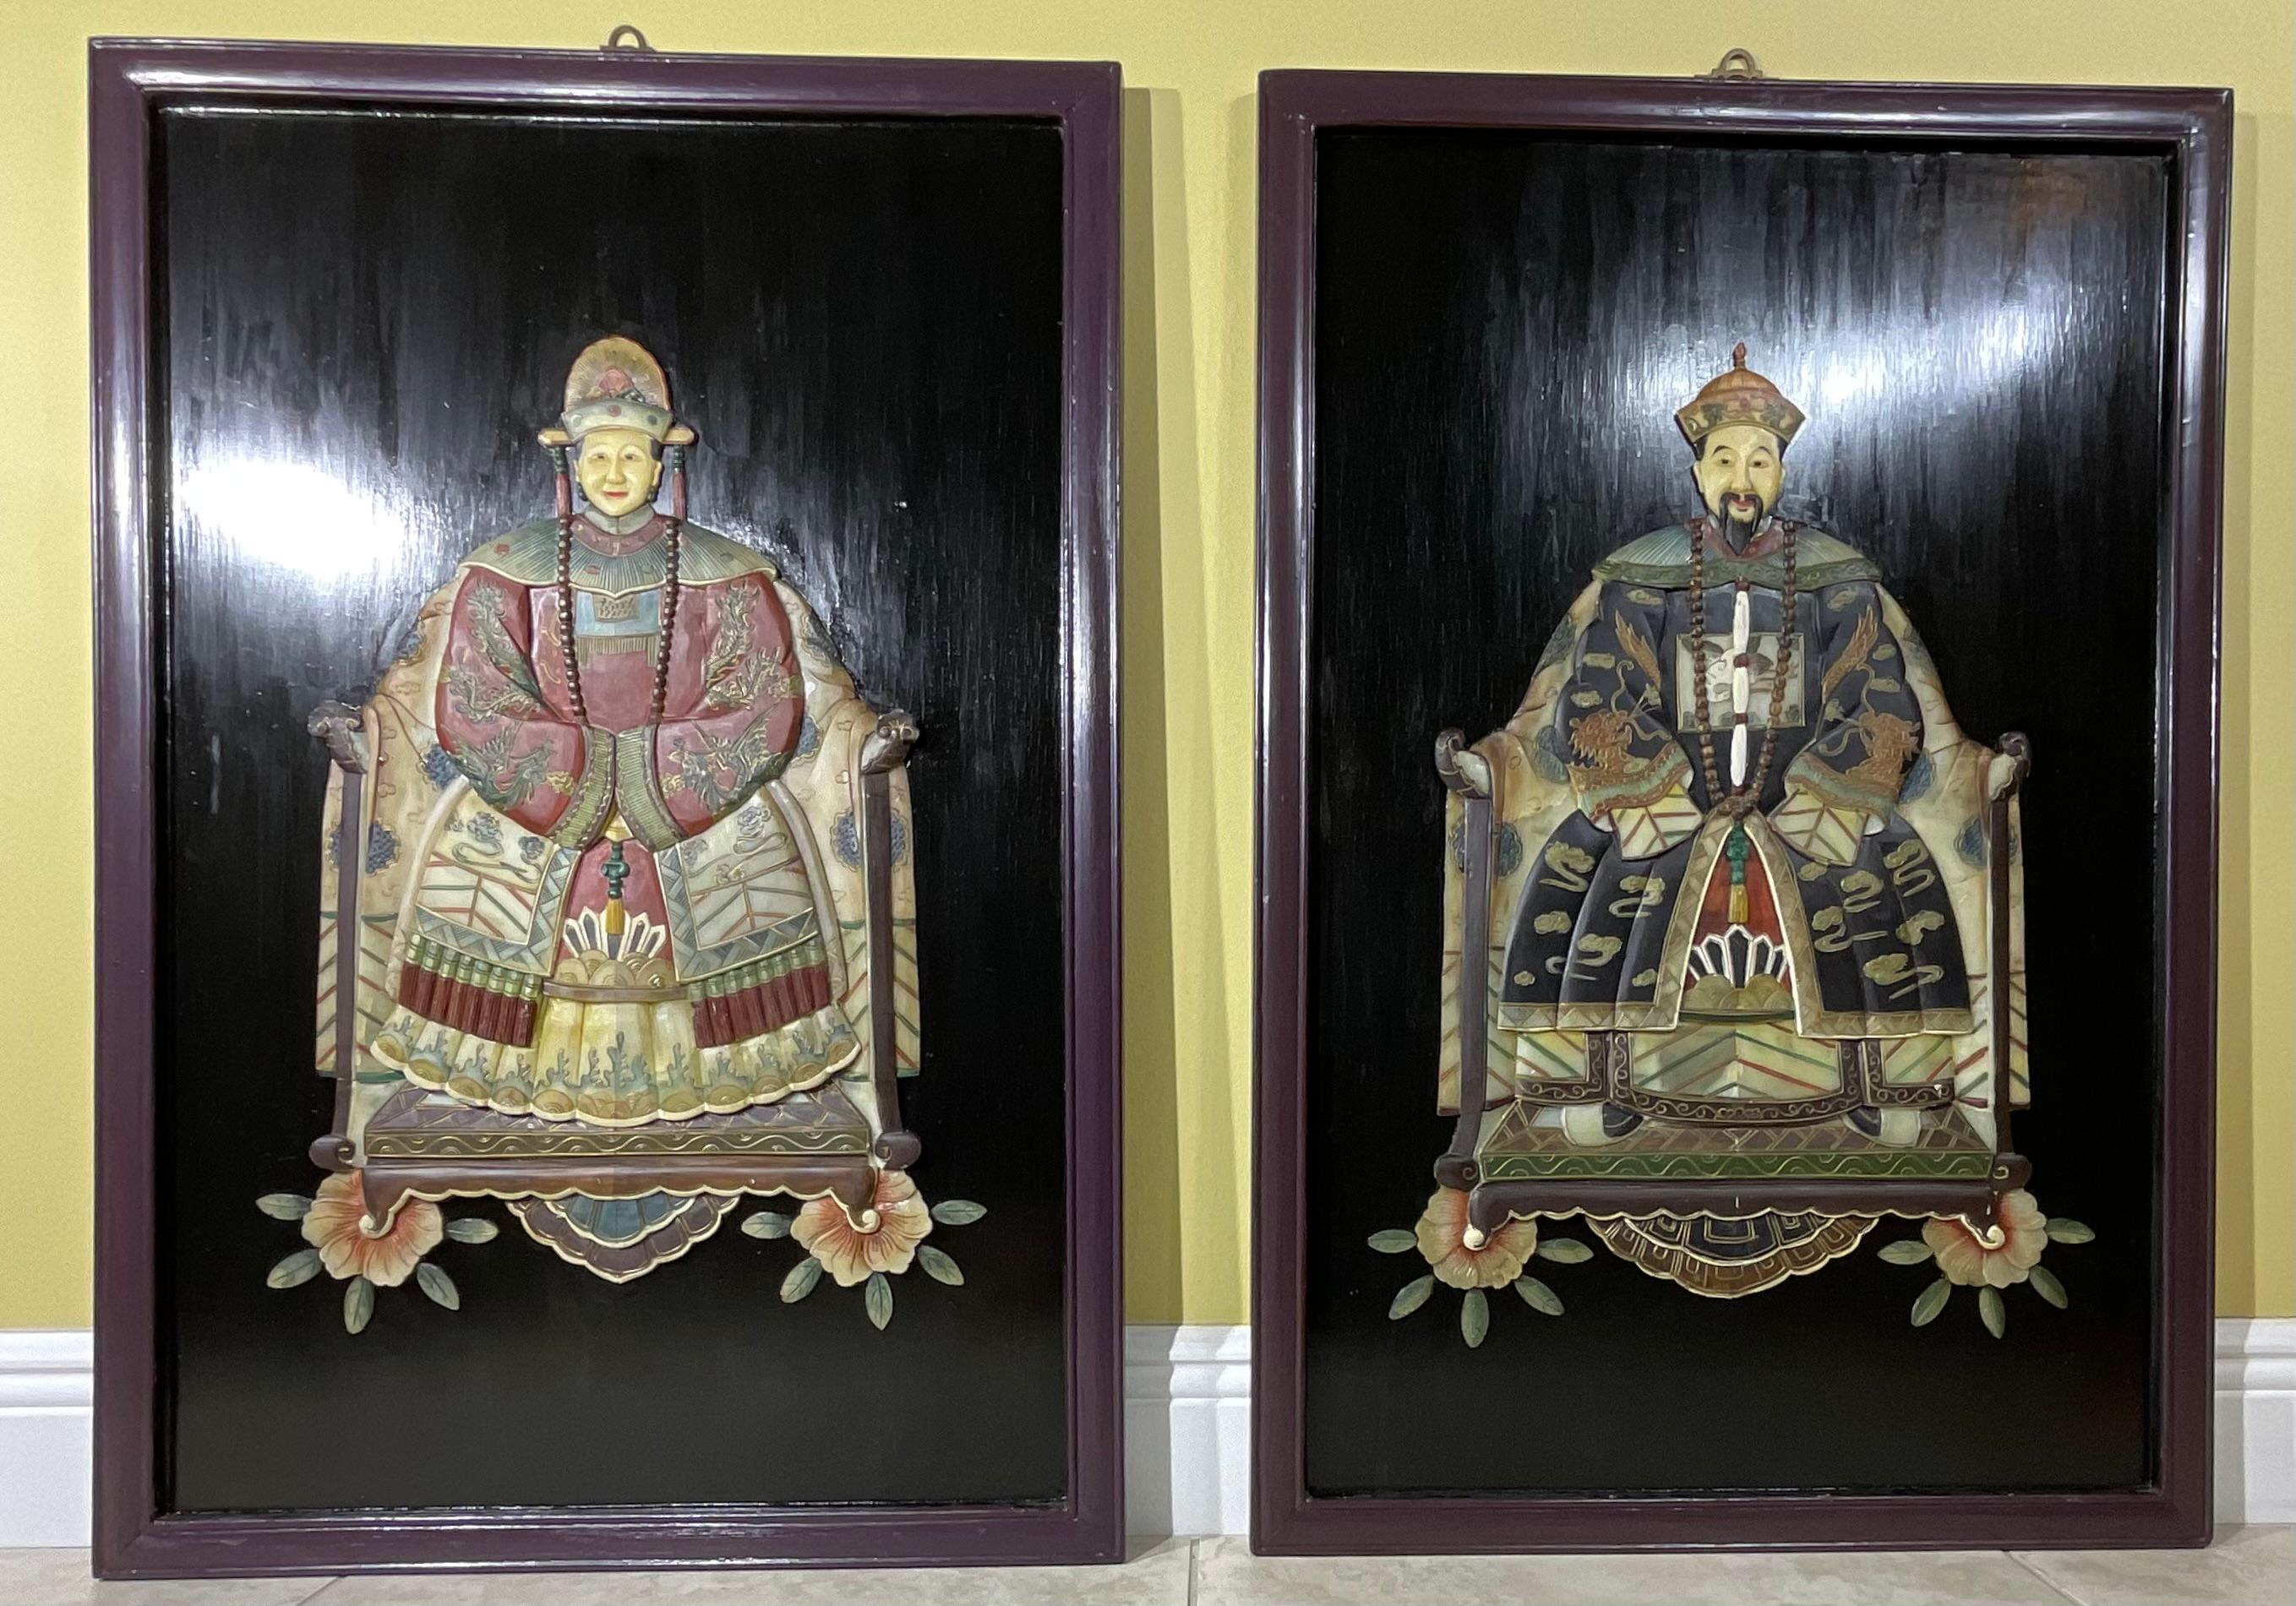 mehrdimensionaler handgeschnitzter und handbemalter Wandbehang, der ein Kaiserpaar aus der chinesischen Dynastie darstellt.  Lebendige, detaillierte Steinmetzarbeit der beiden, die in Gnade nach vorne schauen 
Außergewöhnliches Kunstobjekt zum